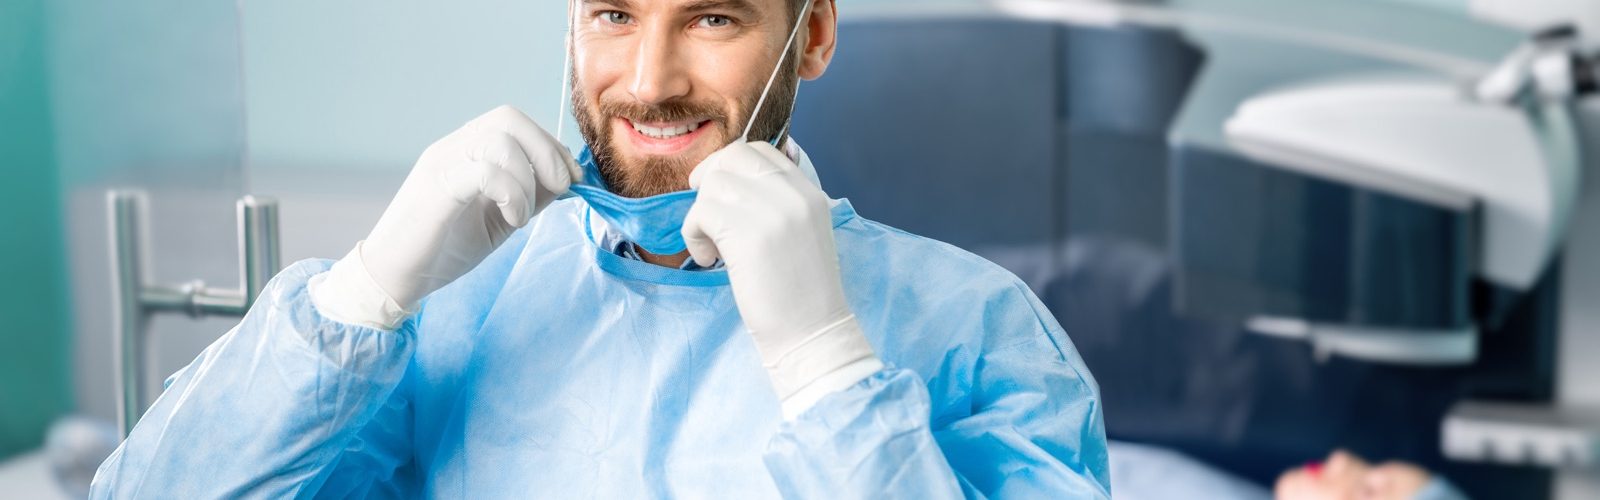 Ein Augenchirurg in Op-Kleidung zieht seinen Mundschutz hoch. Hinter ihm sieht man unscharf eine Patientin unter einem Laser.